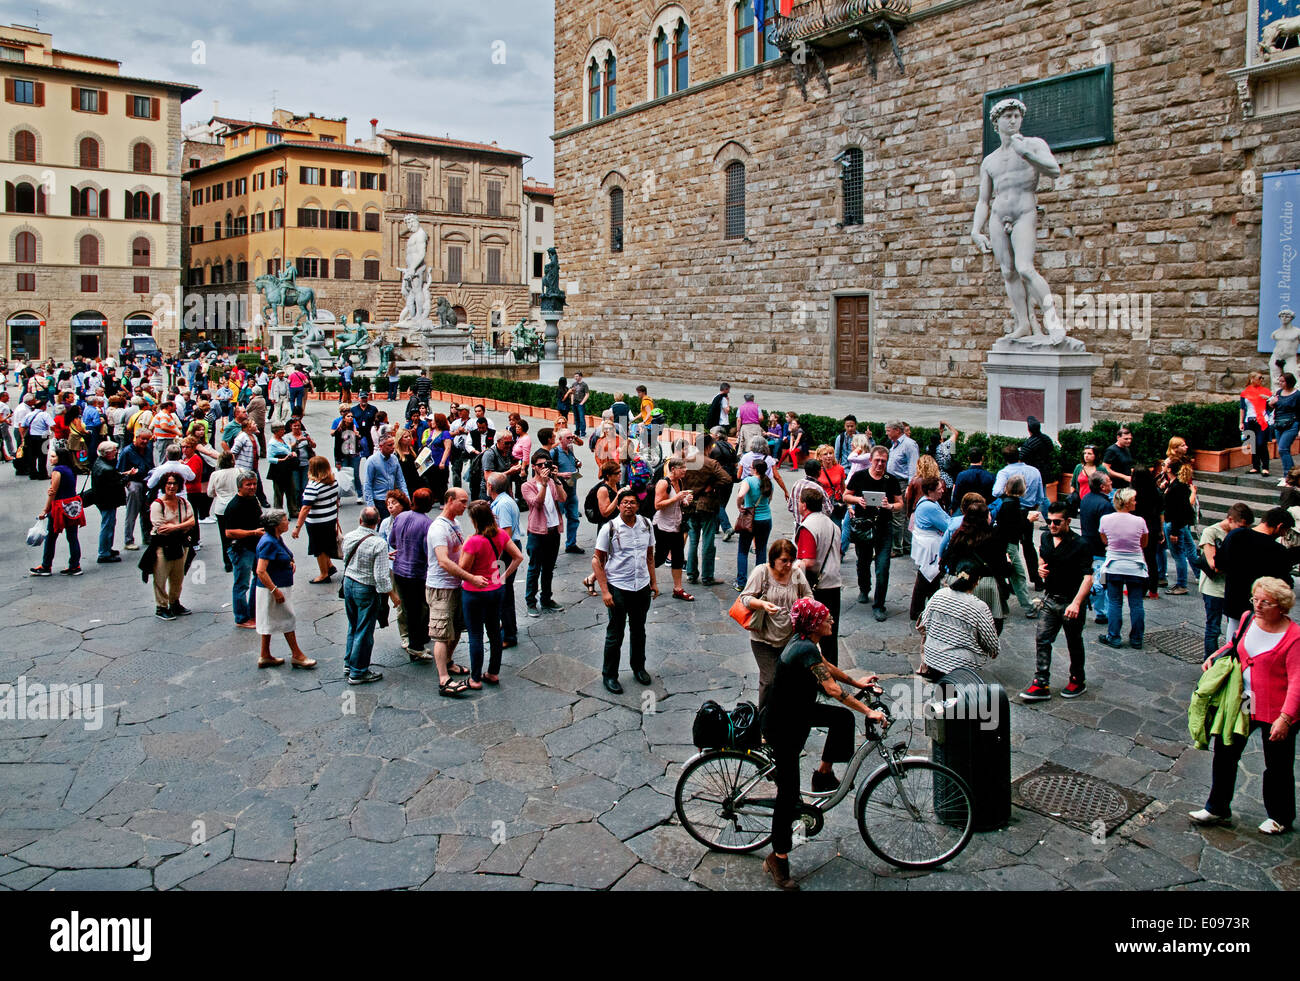 Una folla di gente che ammirare architettura e la statua del David in Piazza della Signoria a Firenze Italia Foto Stock